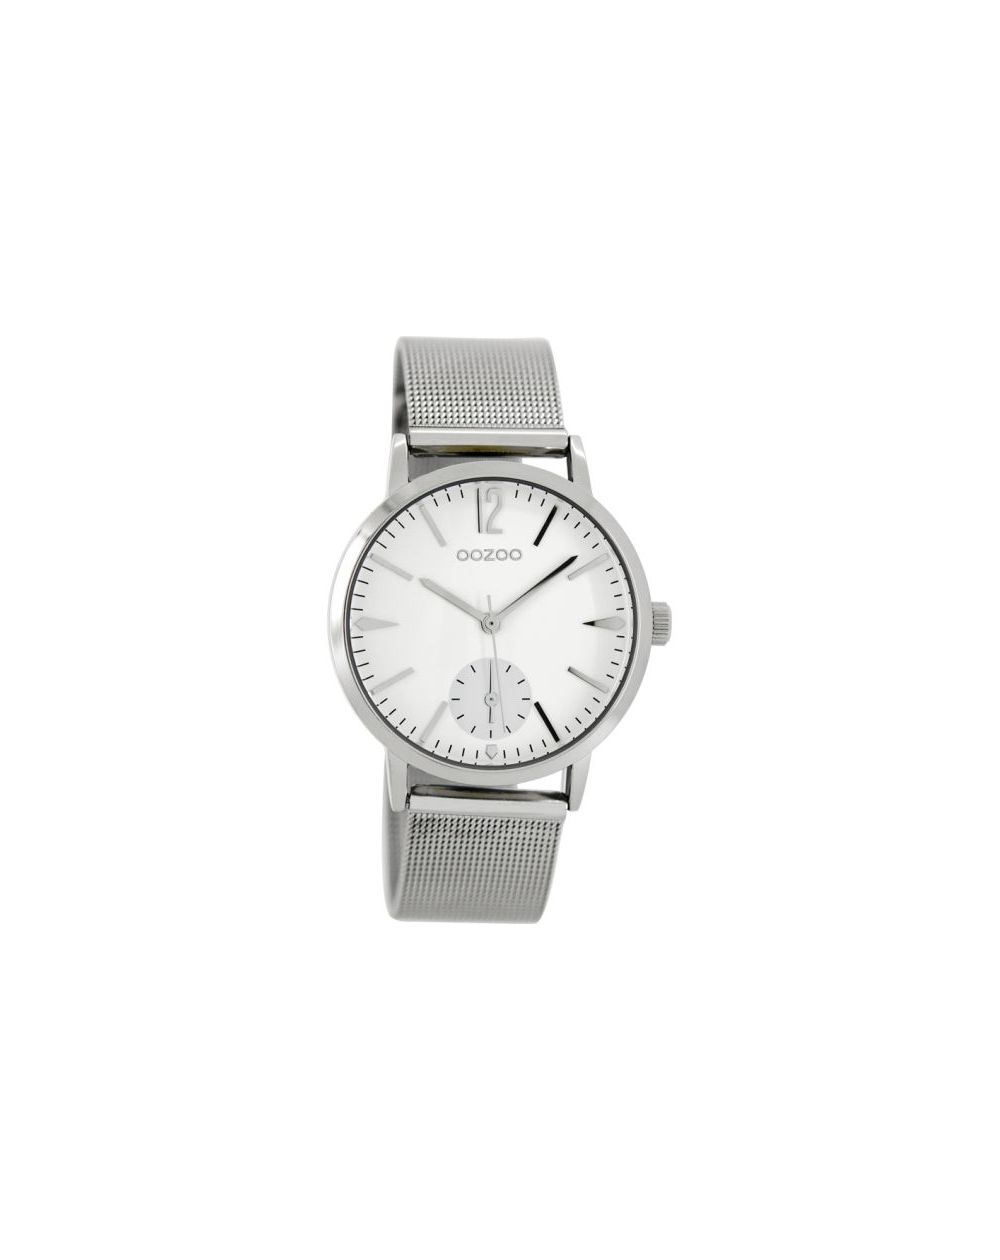 Oozoo montre/watch/horloge C8615